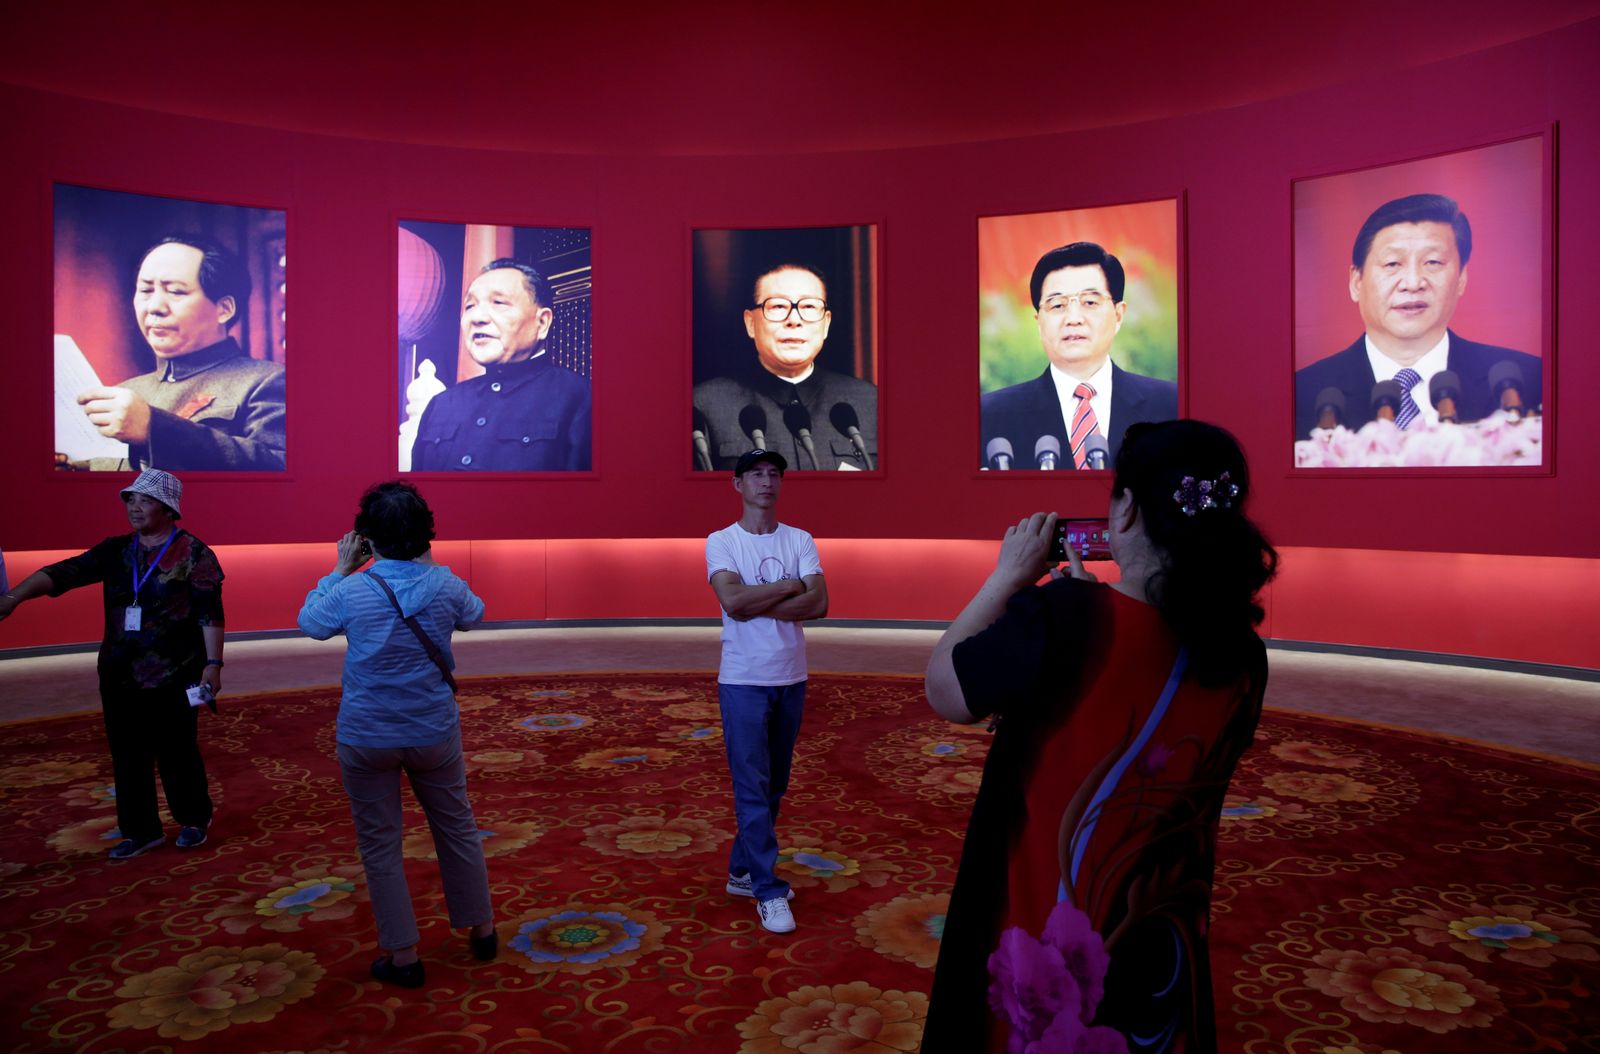 يقفون أمام صور للزعماء الصينيين، وهم (من اليمين إلى اليسار) شي جينبينغ وهو جينتاو وجيانغ زيمين ودينغ شياو بينغ وماو تسي تونغ، خلال معرض في بكين - 24 سبتمبر 2019 - REUTERS